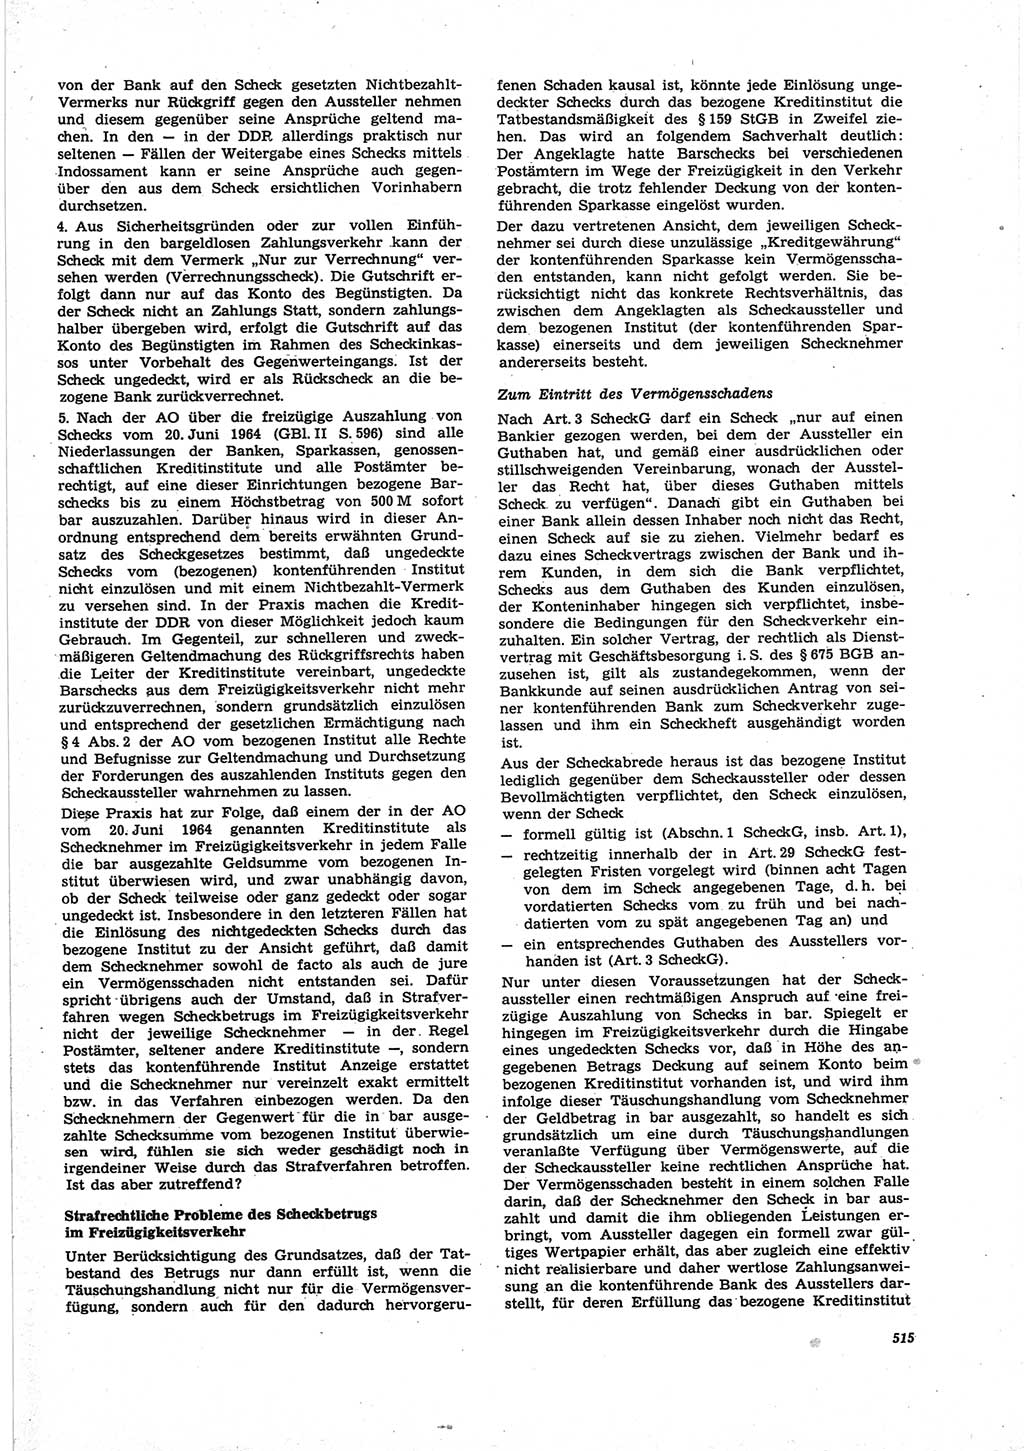 Neue Justiz (NJ), Zeitschrift für Recht und Rechtswissenschaft [Deutsche Demokratische Republik (DDR)], 25. Jahrgang 1971, Seite 515 (NJ DDR 1971, S. 515)